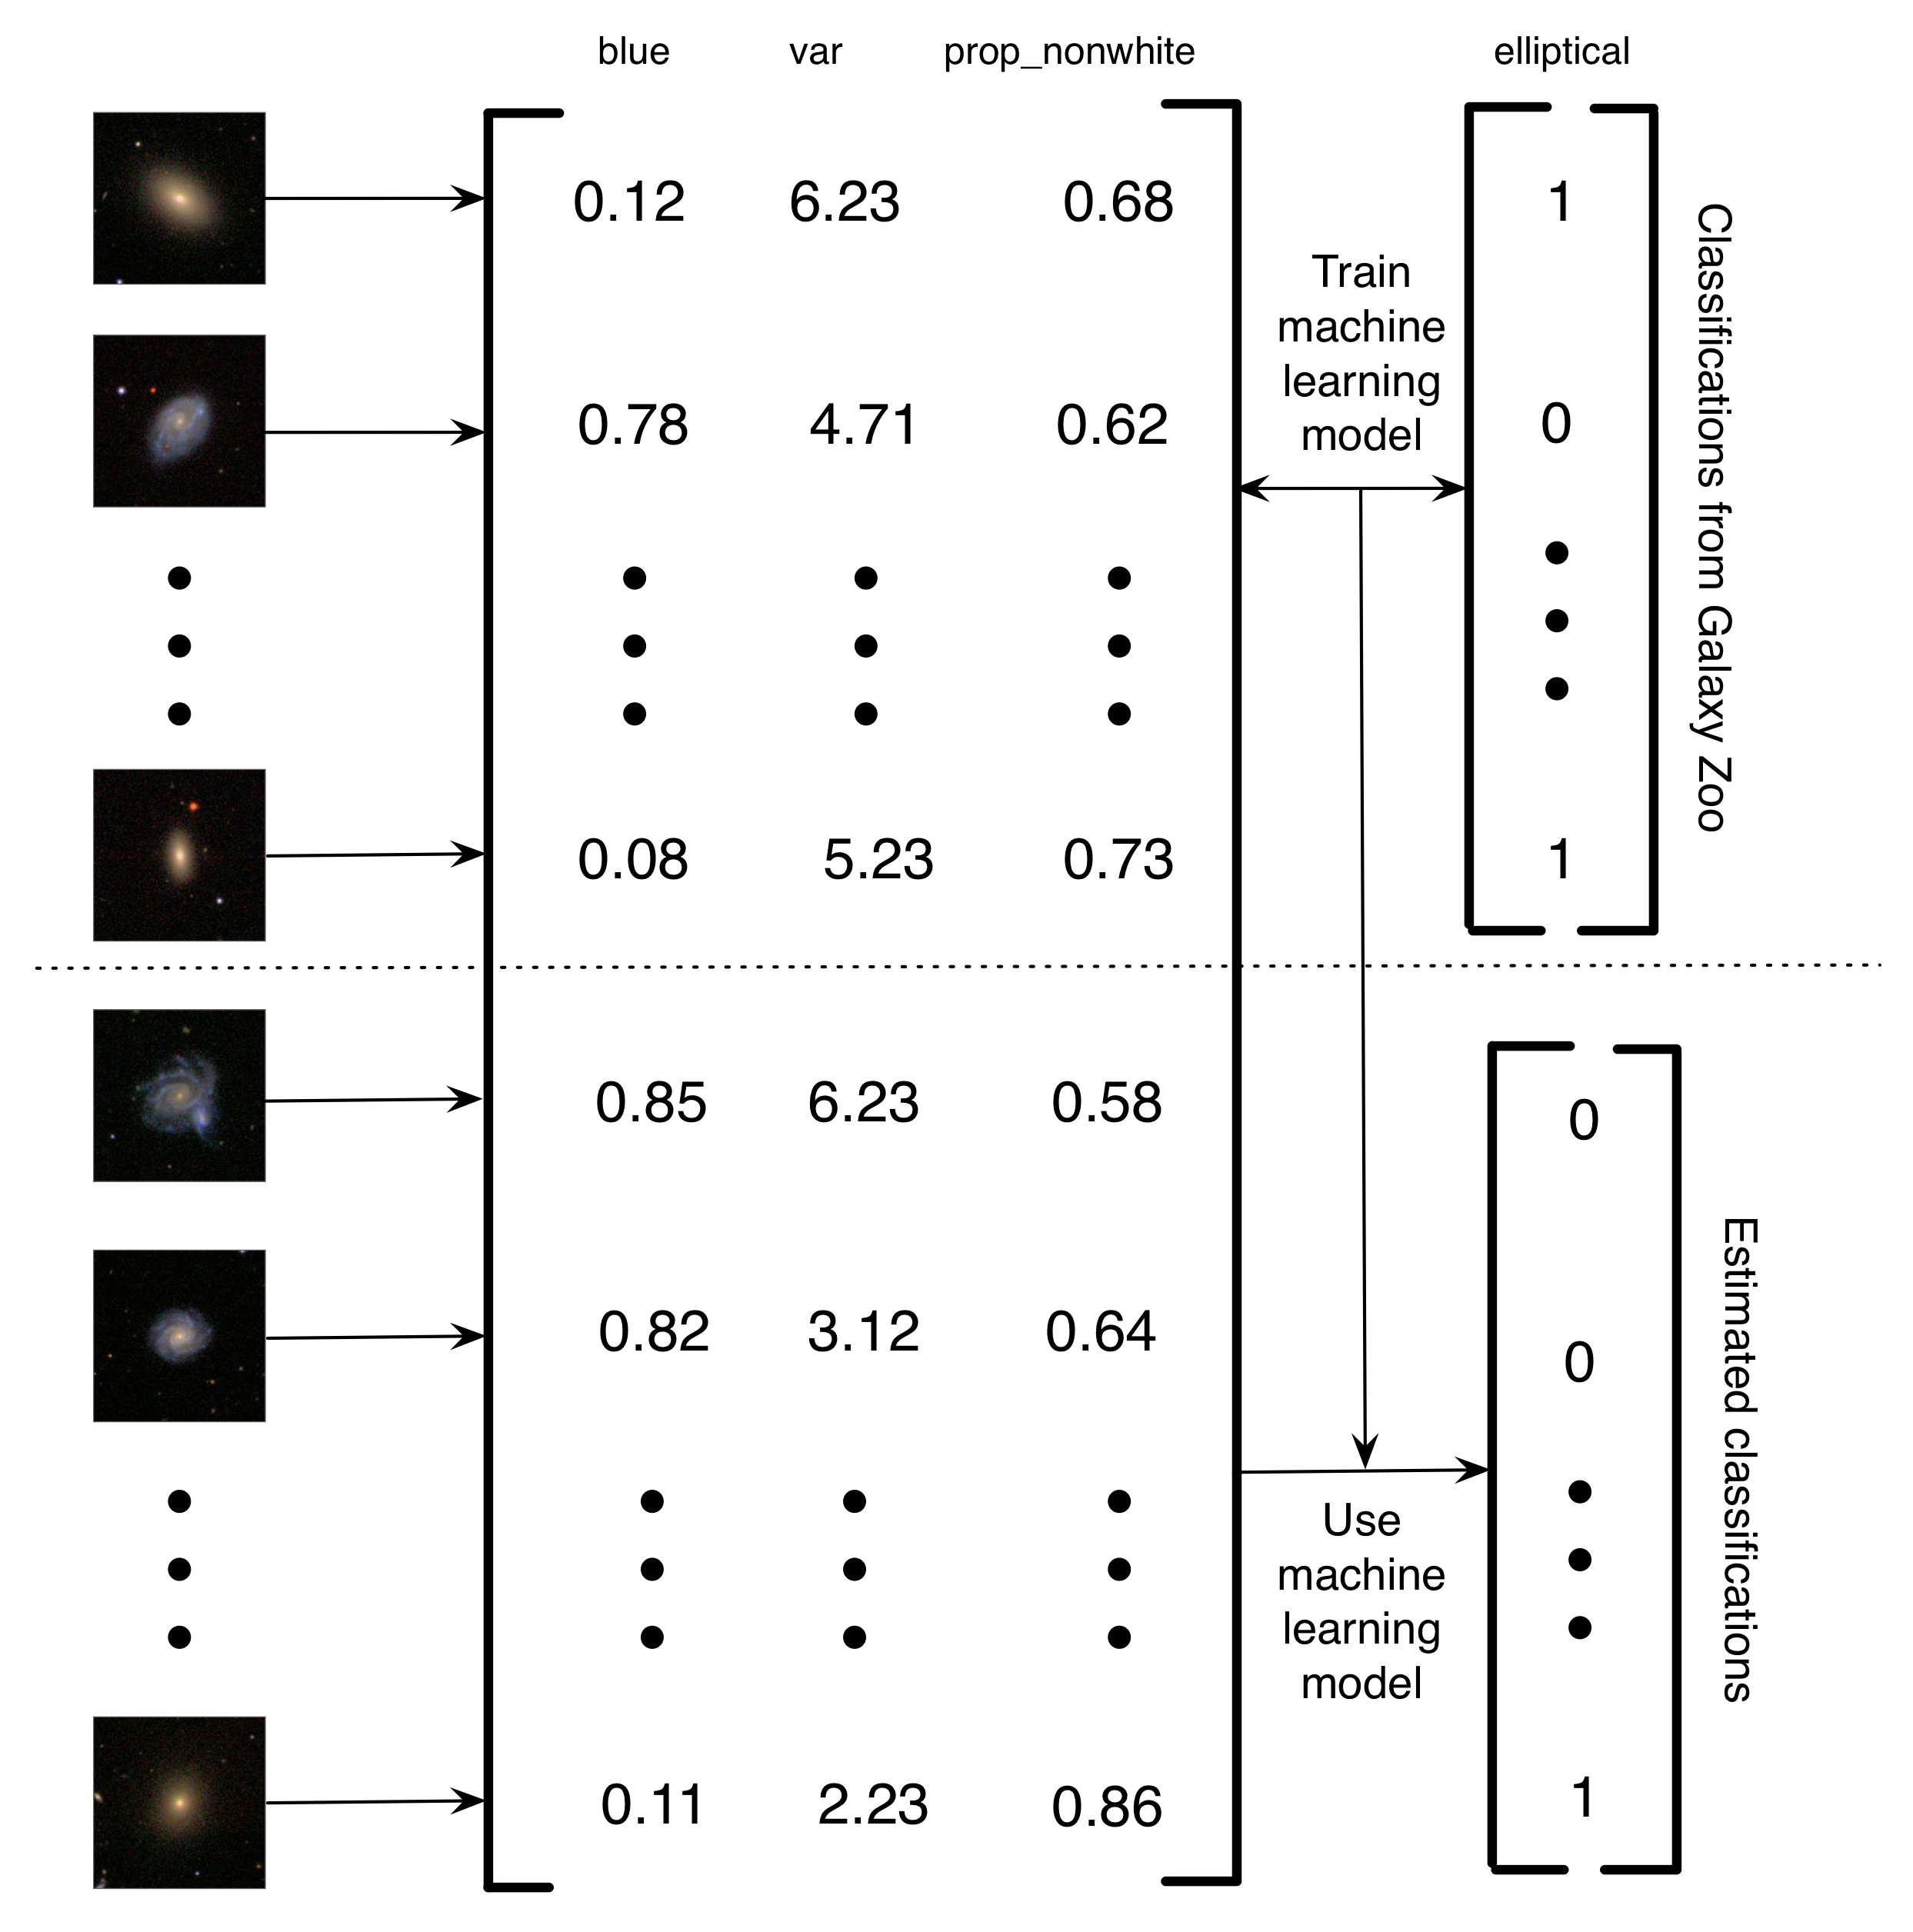 Figura 5.4: descripción simplificada de cómo Banerji et al. (2010) utilizaron las clasificaciones de Galaxy Zoo para entrenar un modelo de aprendizaje automático para hacer la clasificación de galaxias. Las imágenes de las galaxias se convirtieron en una matriz de características. En este ejemplo simplificado, hay tres características (la cantidad de azul en la imagen, la variación en el brillo de los píxeles y la proporción de píxeles no blancos). Luego, para un subconjunto de las imágenes, las etiquetas de Galaxy Zoo se utilizan para entrenar un modelo de aprendizaje automático. Finalmente, el aprendizaje automático se usa para estimar las clasificaciones de las galaxias restantes. Yo llamo a esto un proyecto de computación humana asistido por computadora porque, en lugar de que los humanos solucionen un problema, los humanos han creado un conjunto de datos que se puede usar para entrenar a una computadora para resolver el problema. La ventaja de este sistema de computación humano asistido por computadora es que le permite manejar cantidades de datos esencialmente infinitas usando solo una cantidad finita de esfuerzo humano. Imágenes de galaxias reproducidas con permiso de Sloan Digital Sky Survey.